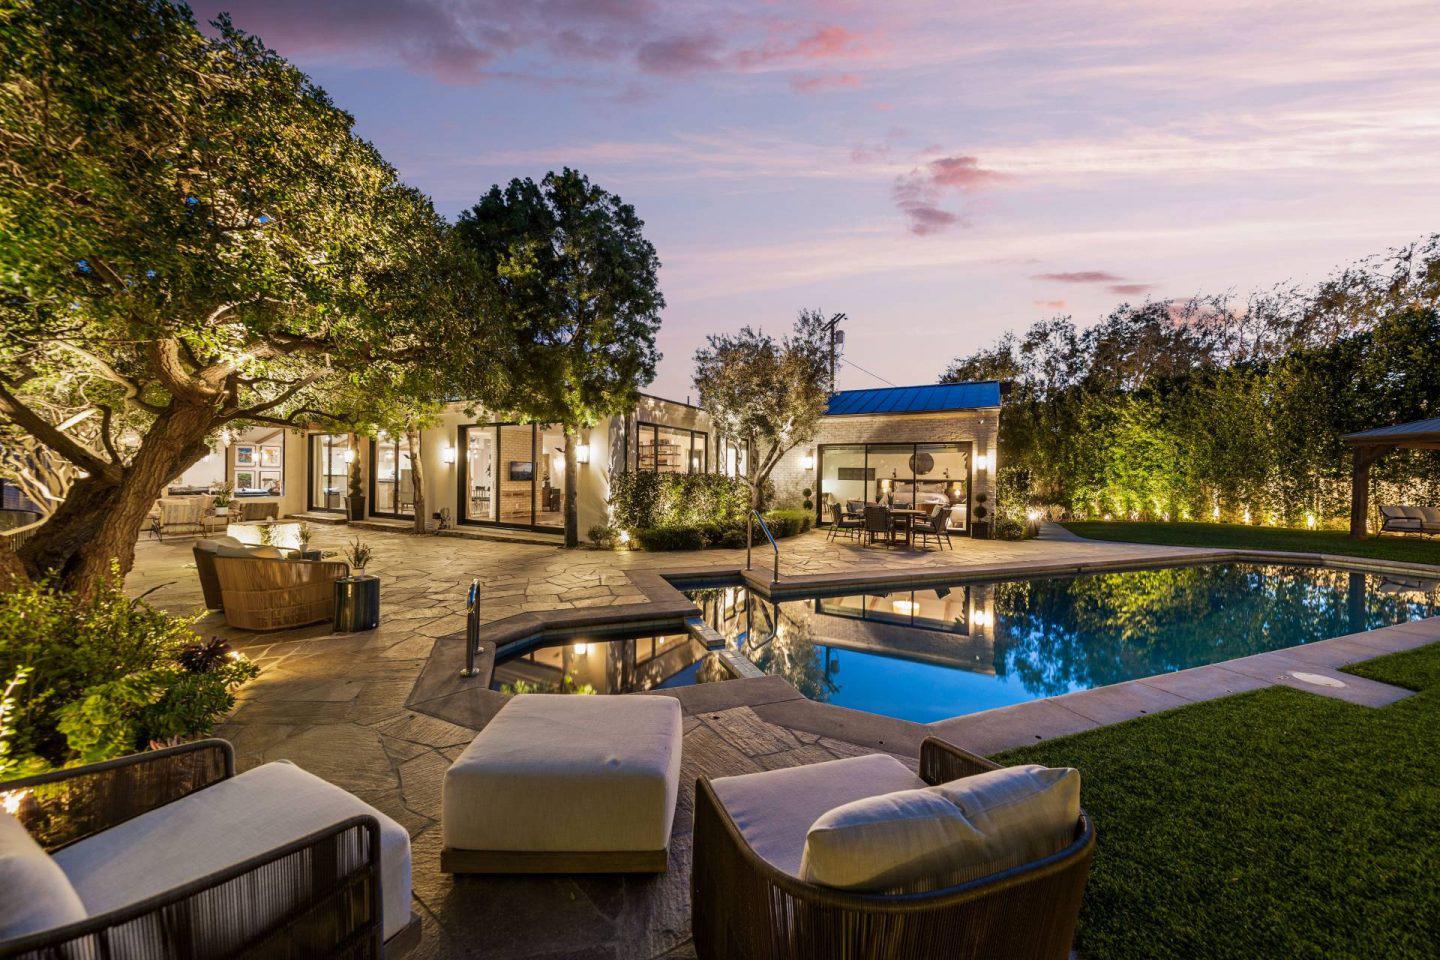 La antigua casa de Los Ángeles de los actores Emily Blunt y John Krasinski se vende por $ 6 millones